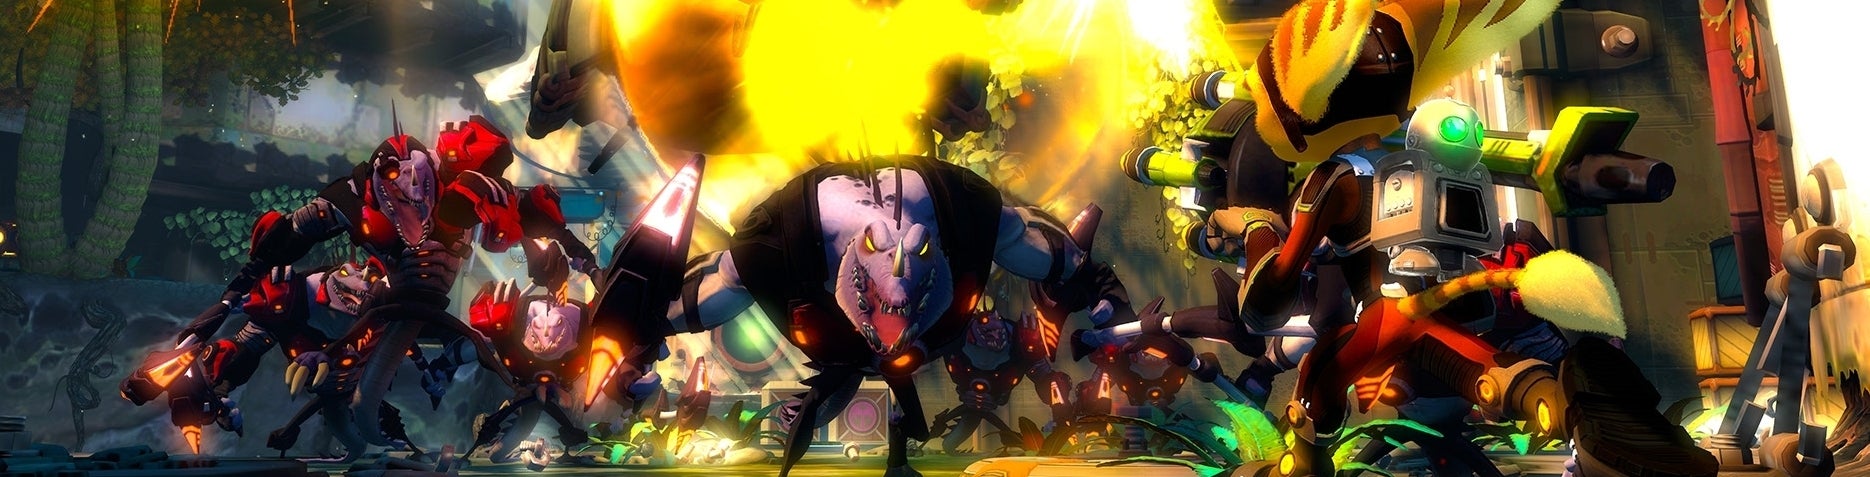 Afbeeldingen van Ratchet & Clank: Nexus komt uit in november